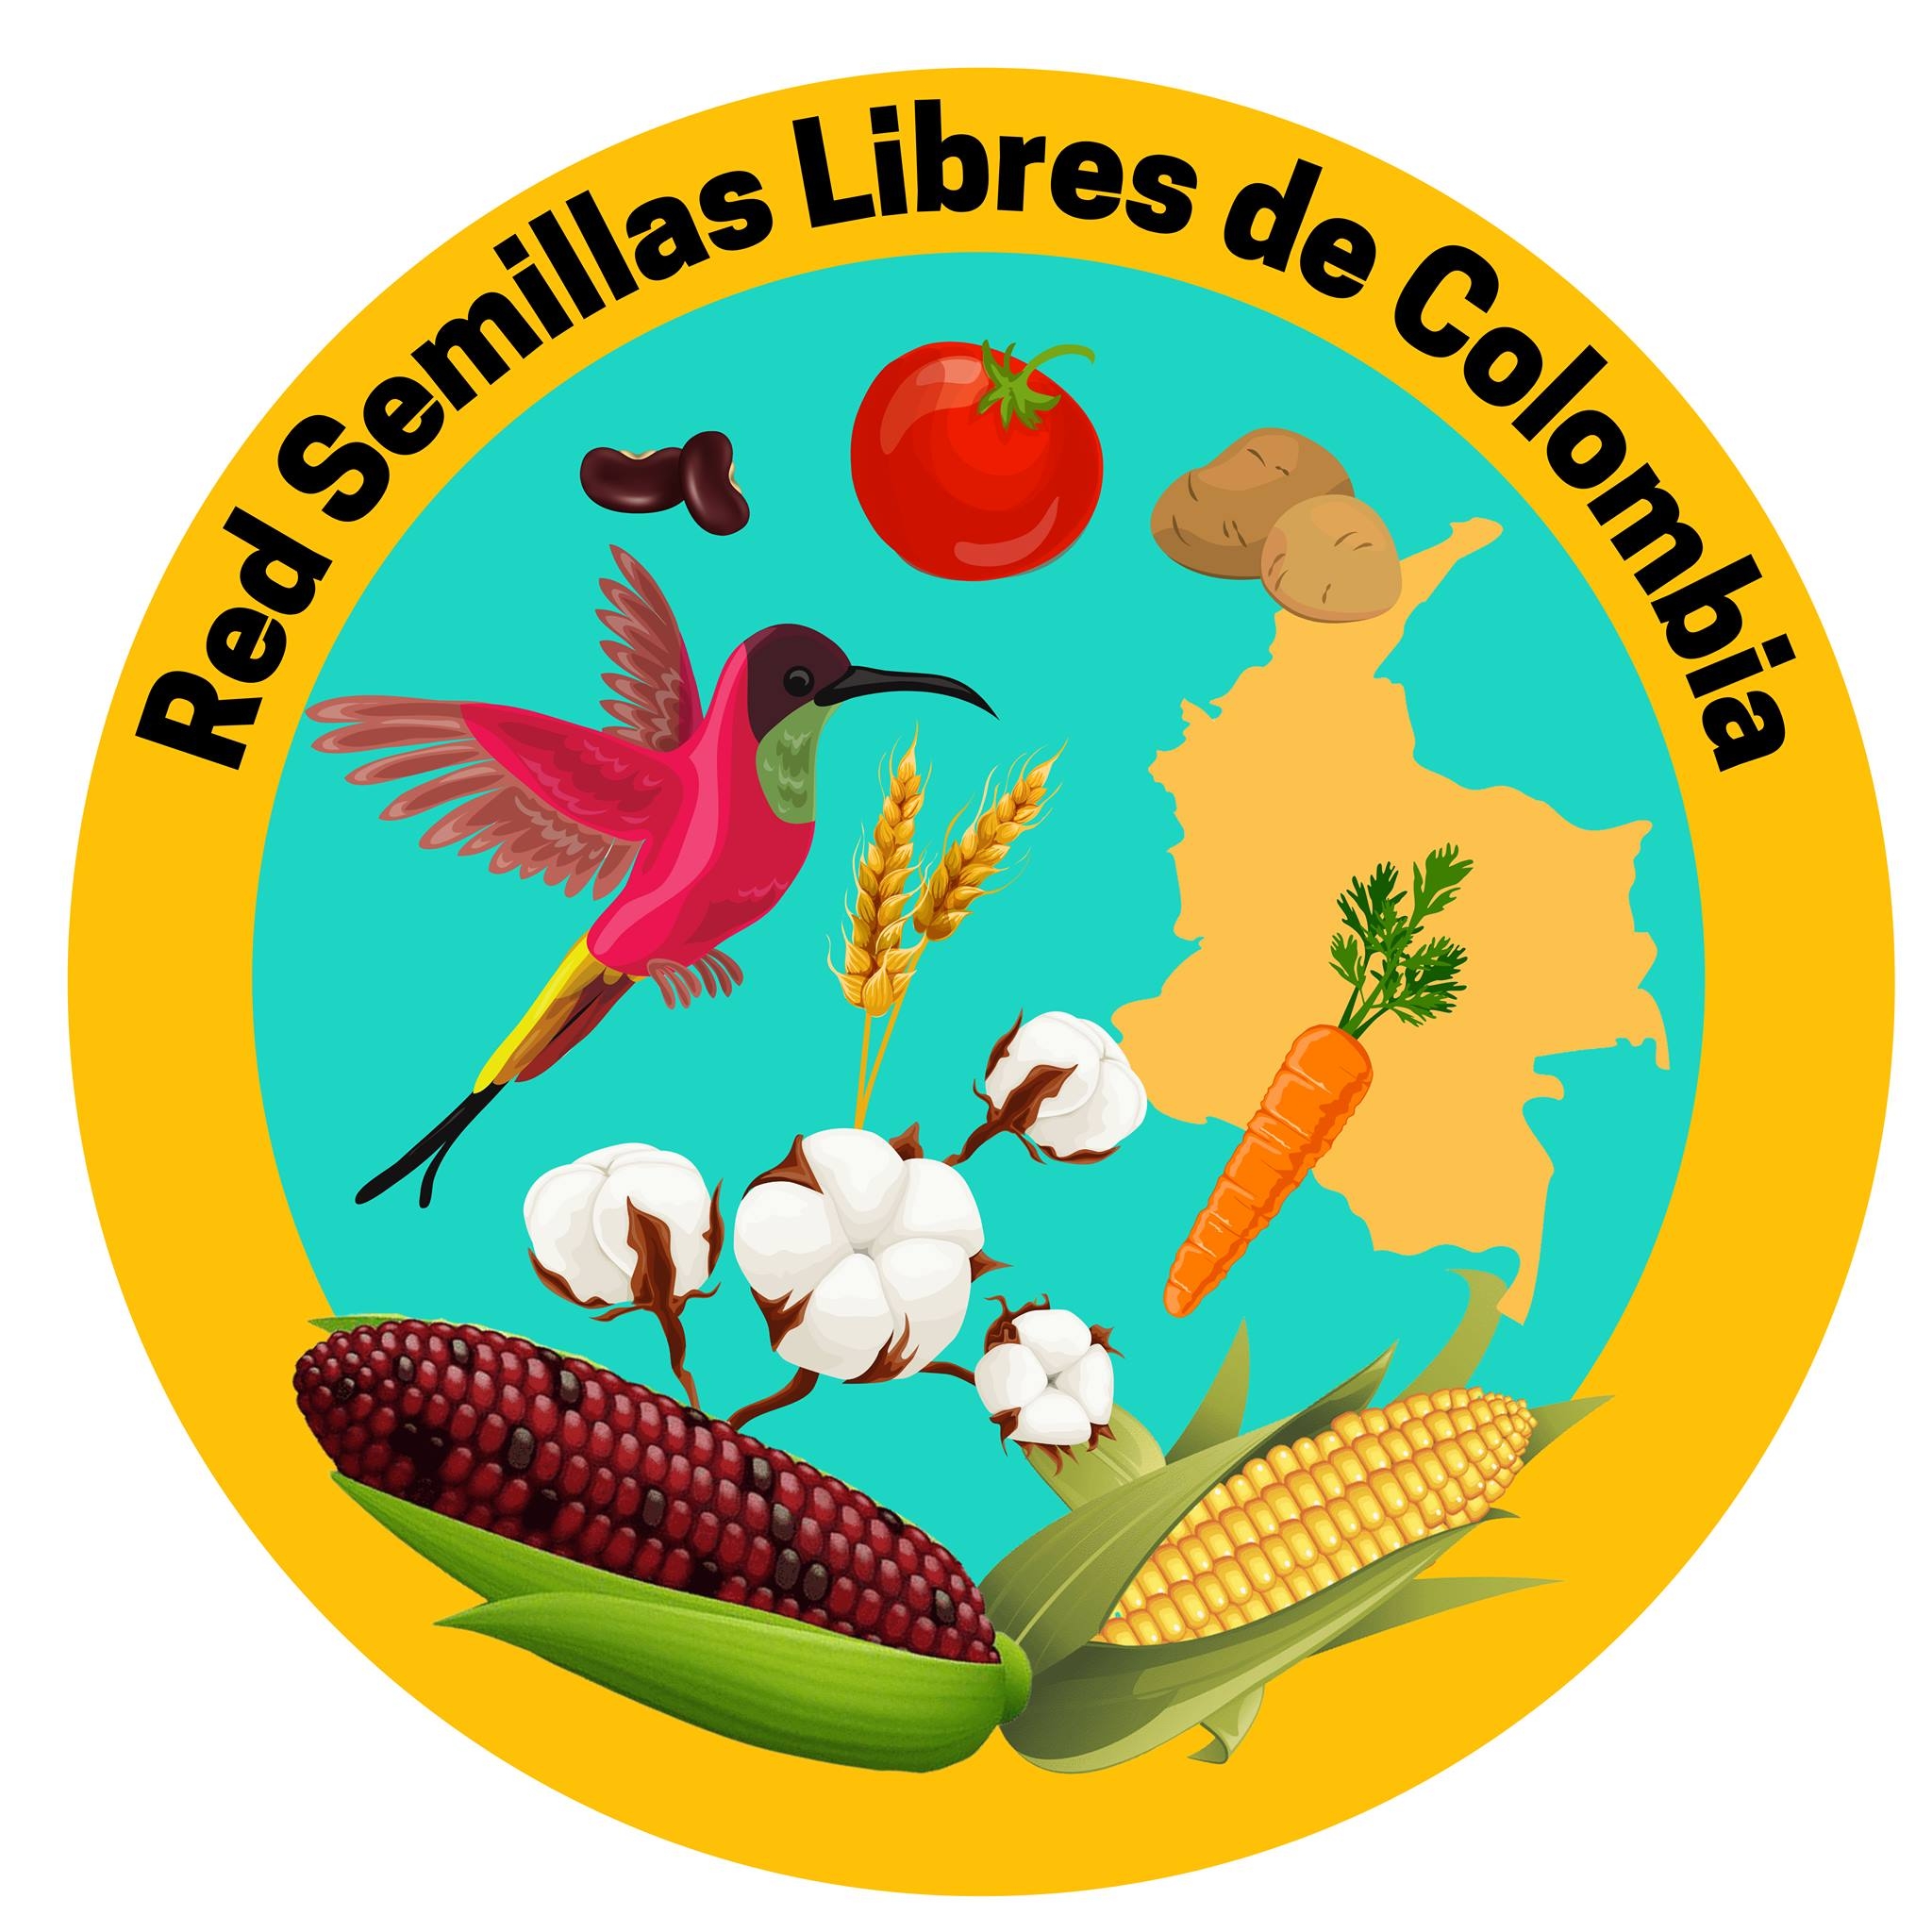 gráfica alusiva a Red de Semillas Libres de Colombia